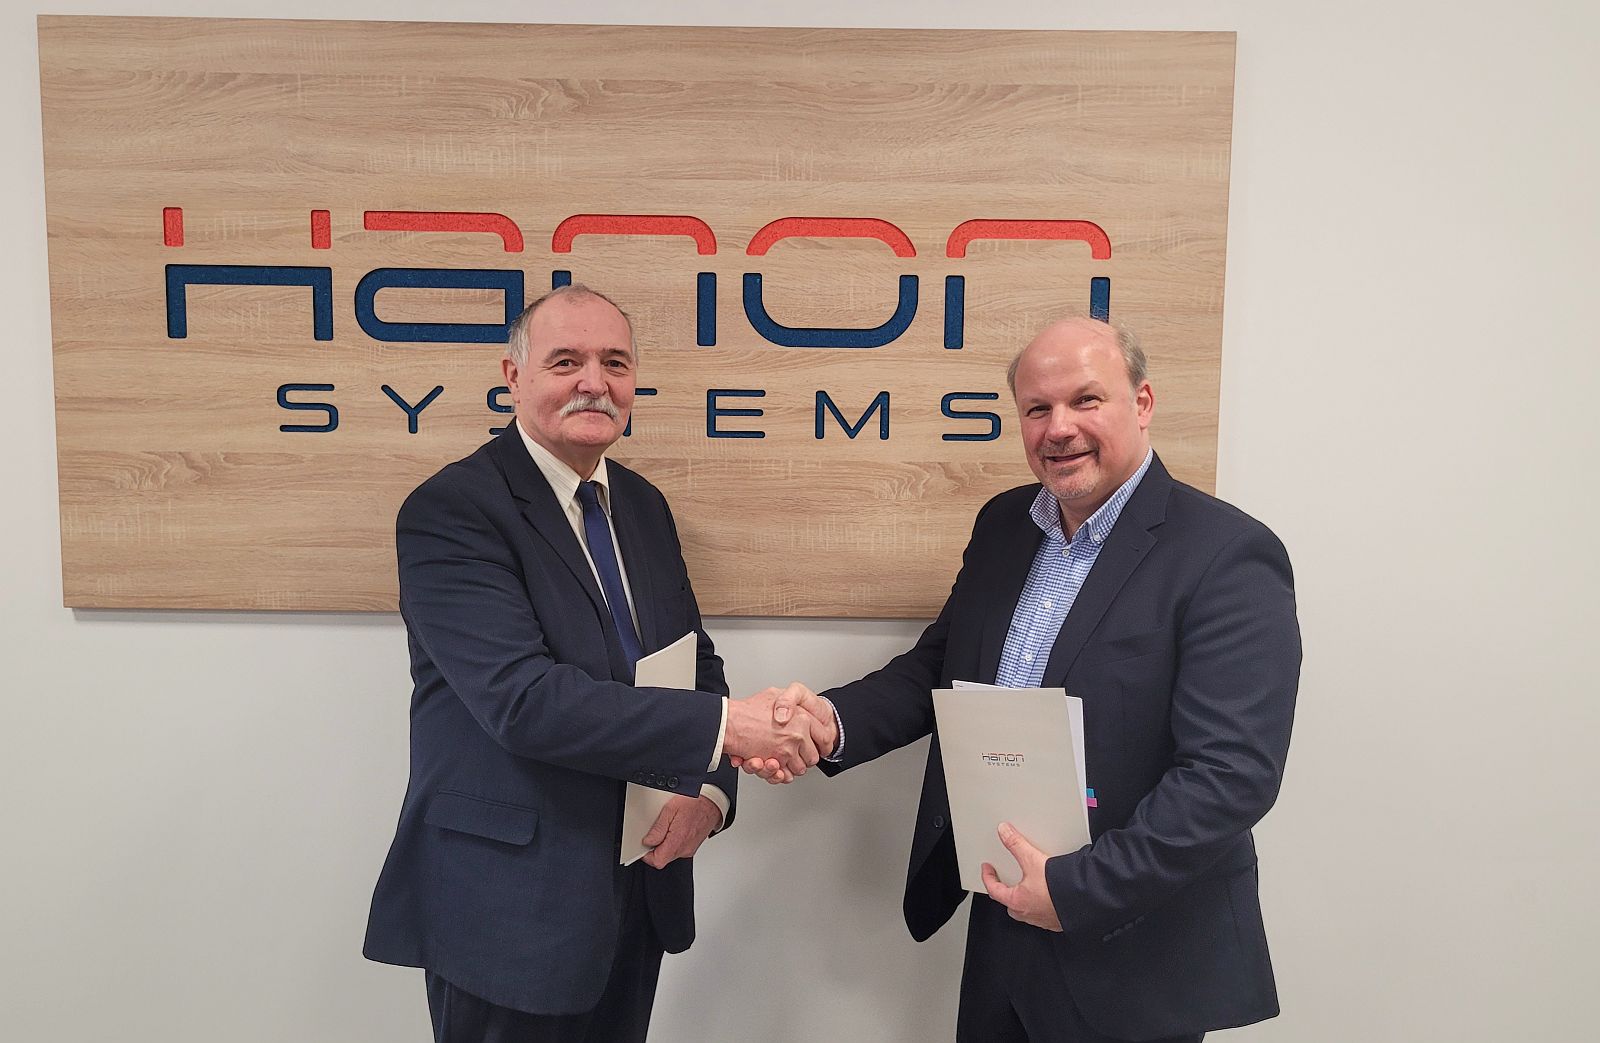 Eszközöket adományoz a fehérvári műszaki egyetemi karnak a Hanon Systems Hungary